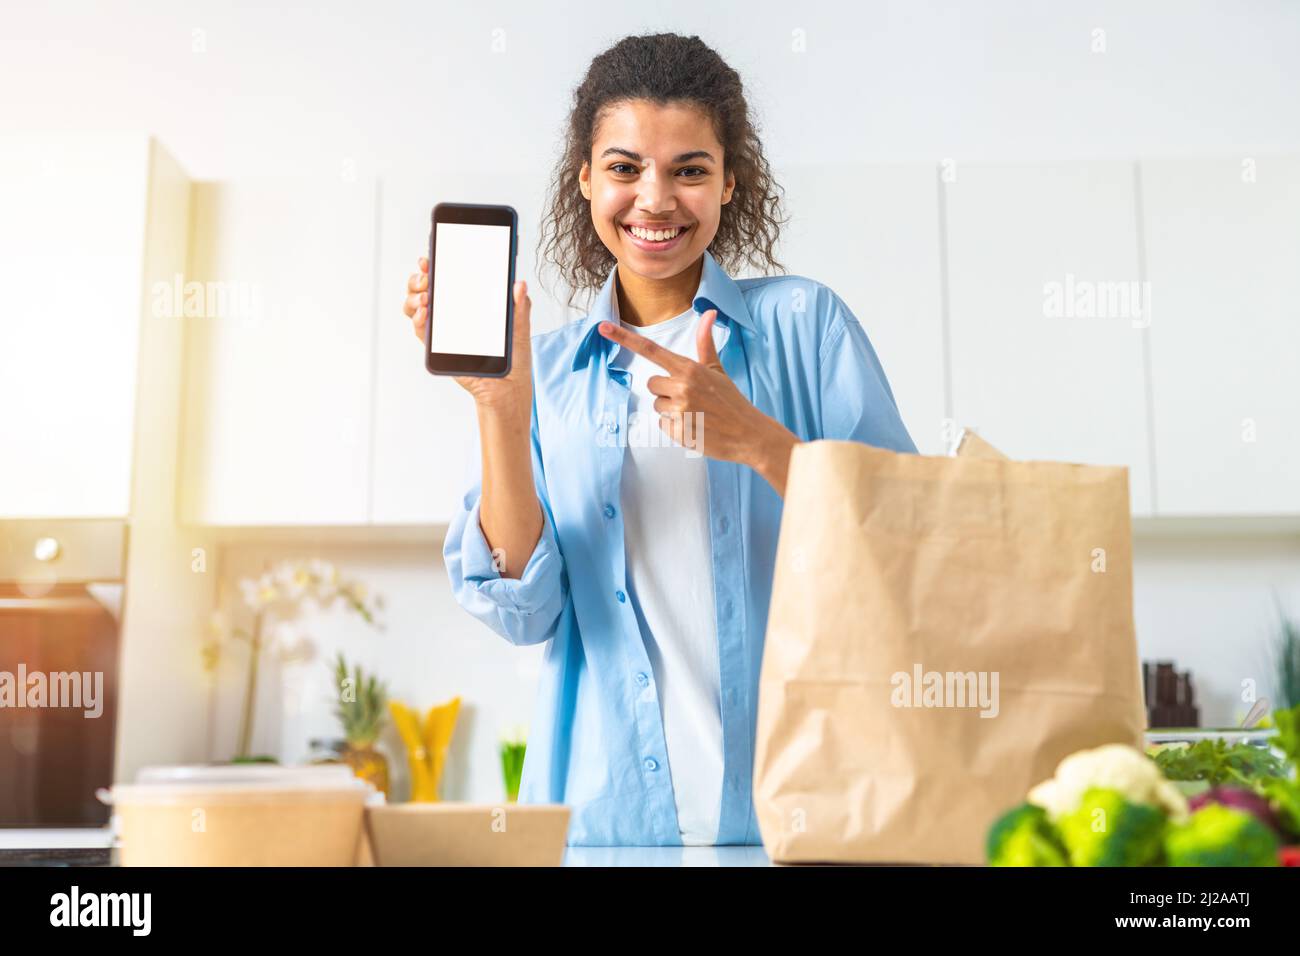 Lächelnde Frau mit einer Einkaufstasche, die online über das Smartphone bestellt und direkt zu Hause geliefert wurde Stockfoto